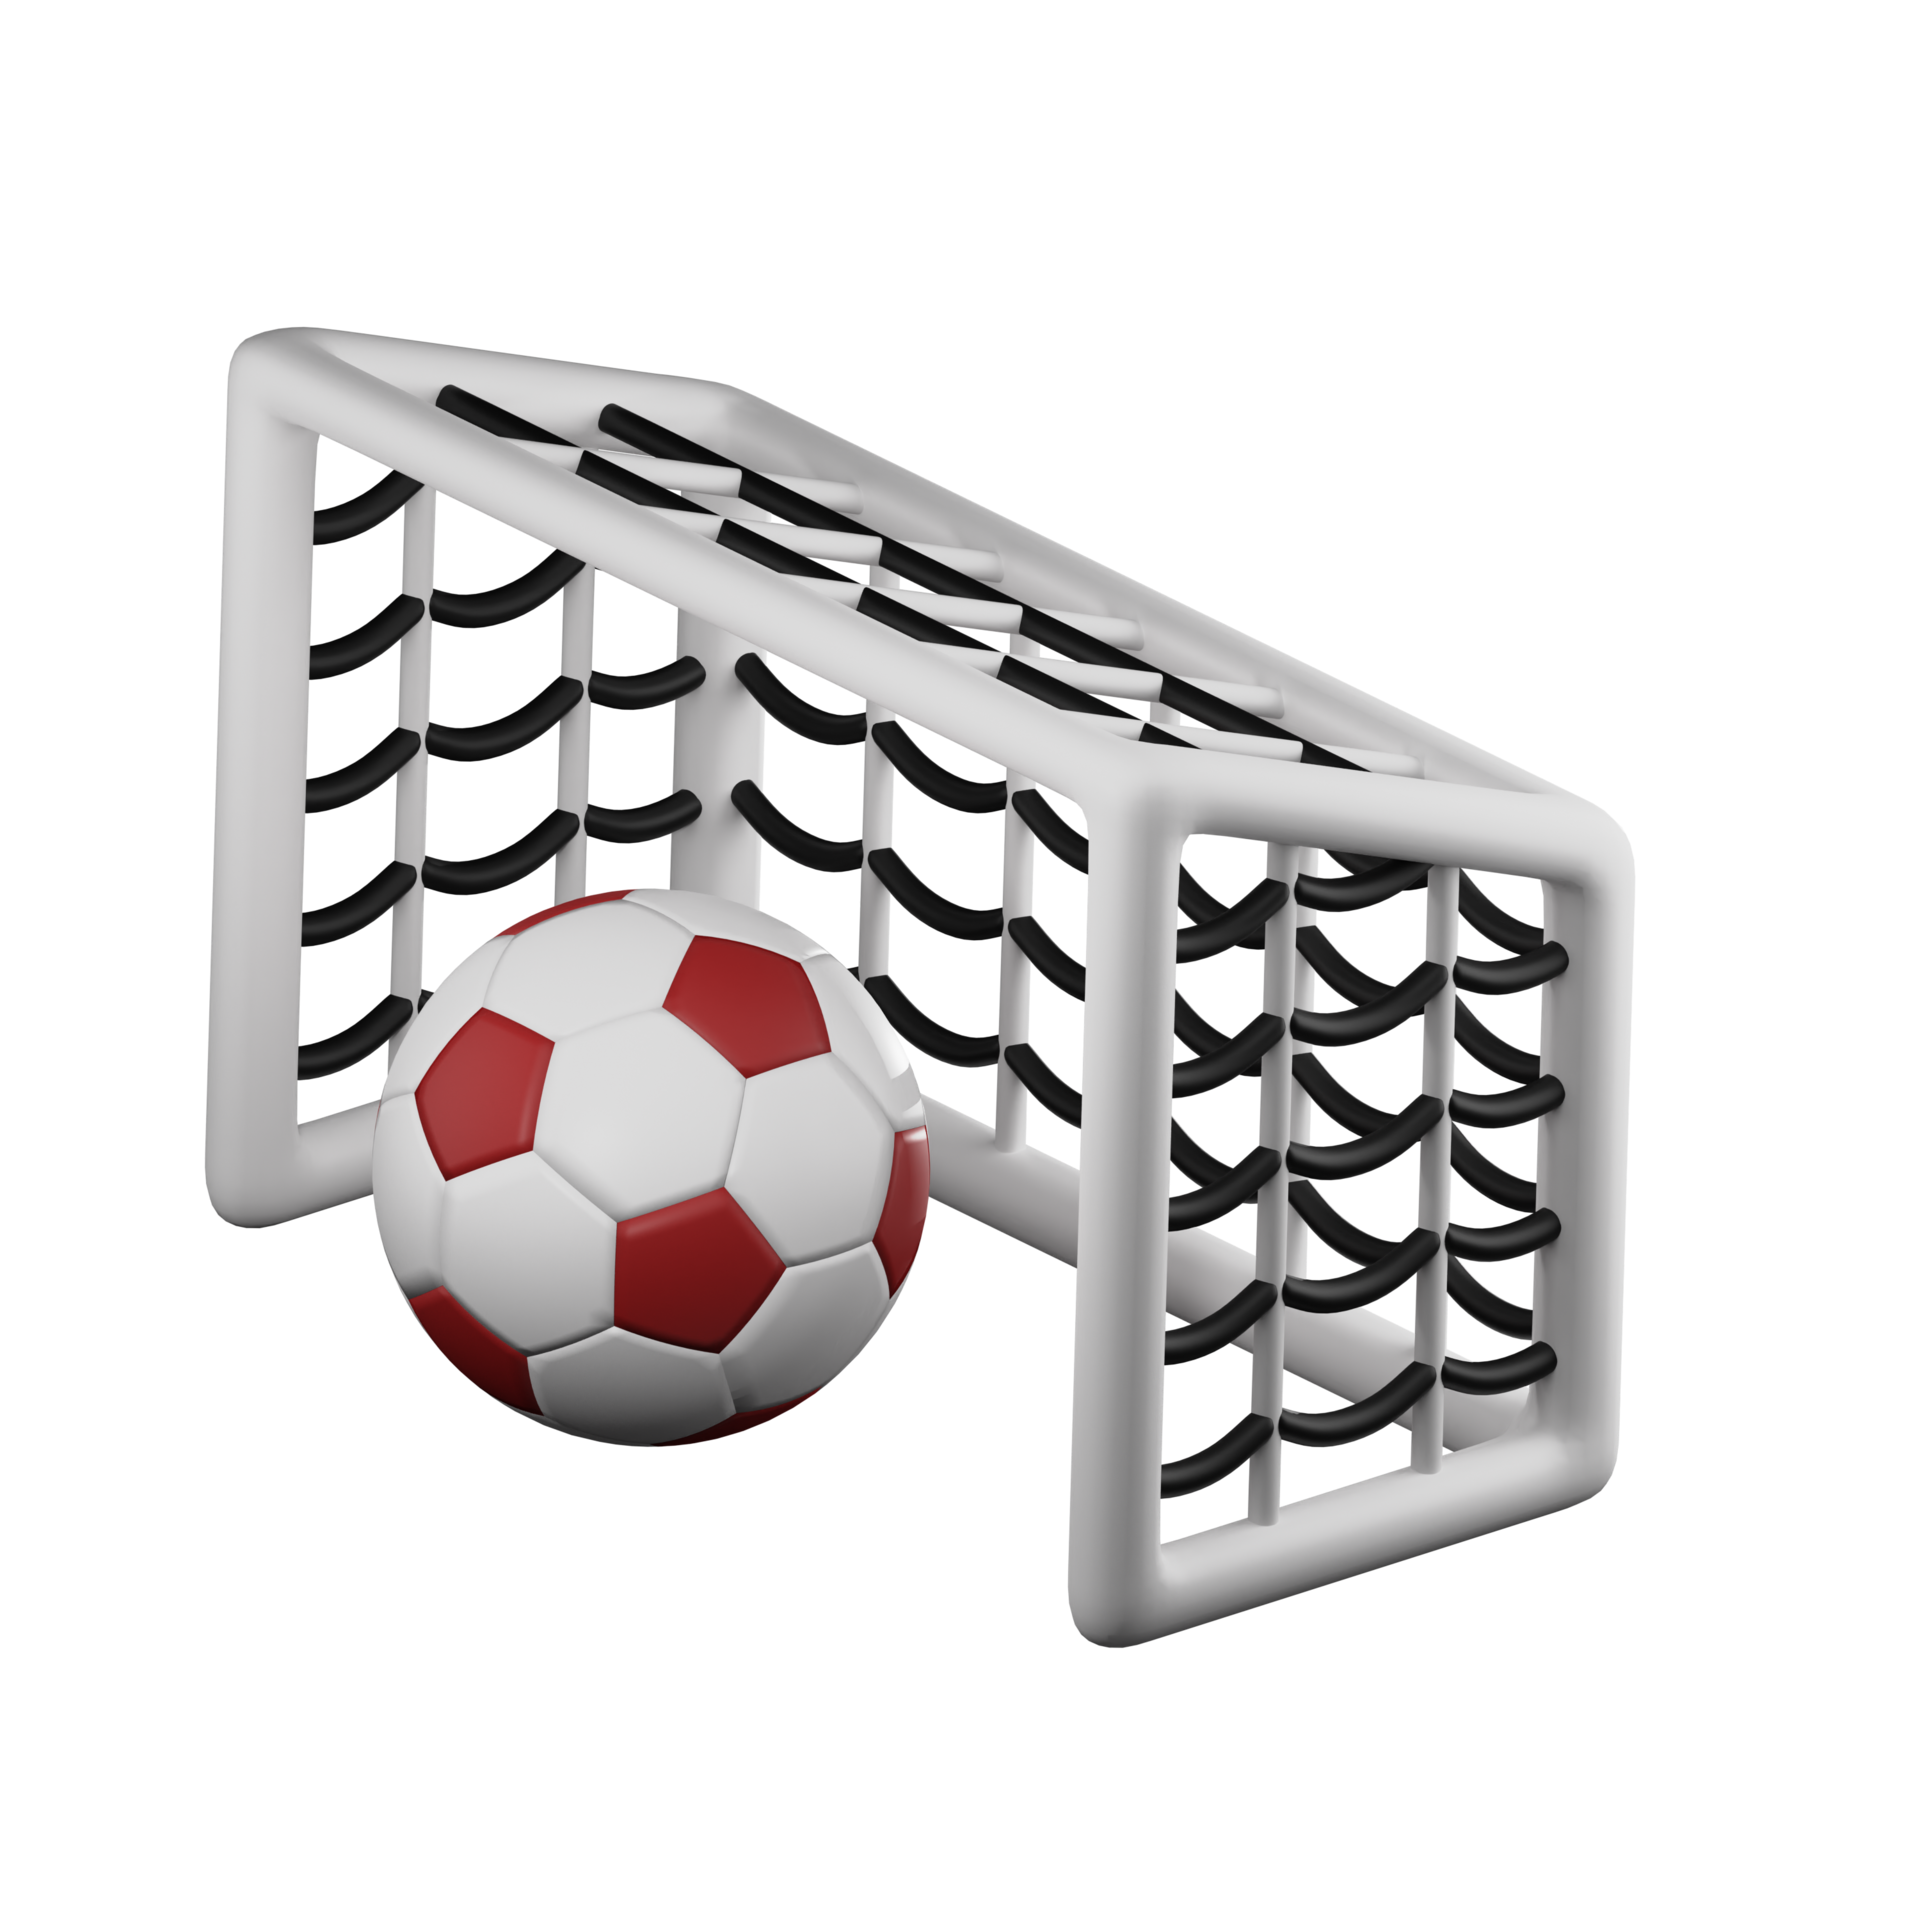 Homyl Cage de Foot Goal Football Pliable Portable But Football Foot Enfant  Jeux Exterieur Interieur Loisir Sport - 86cm